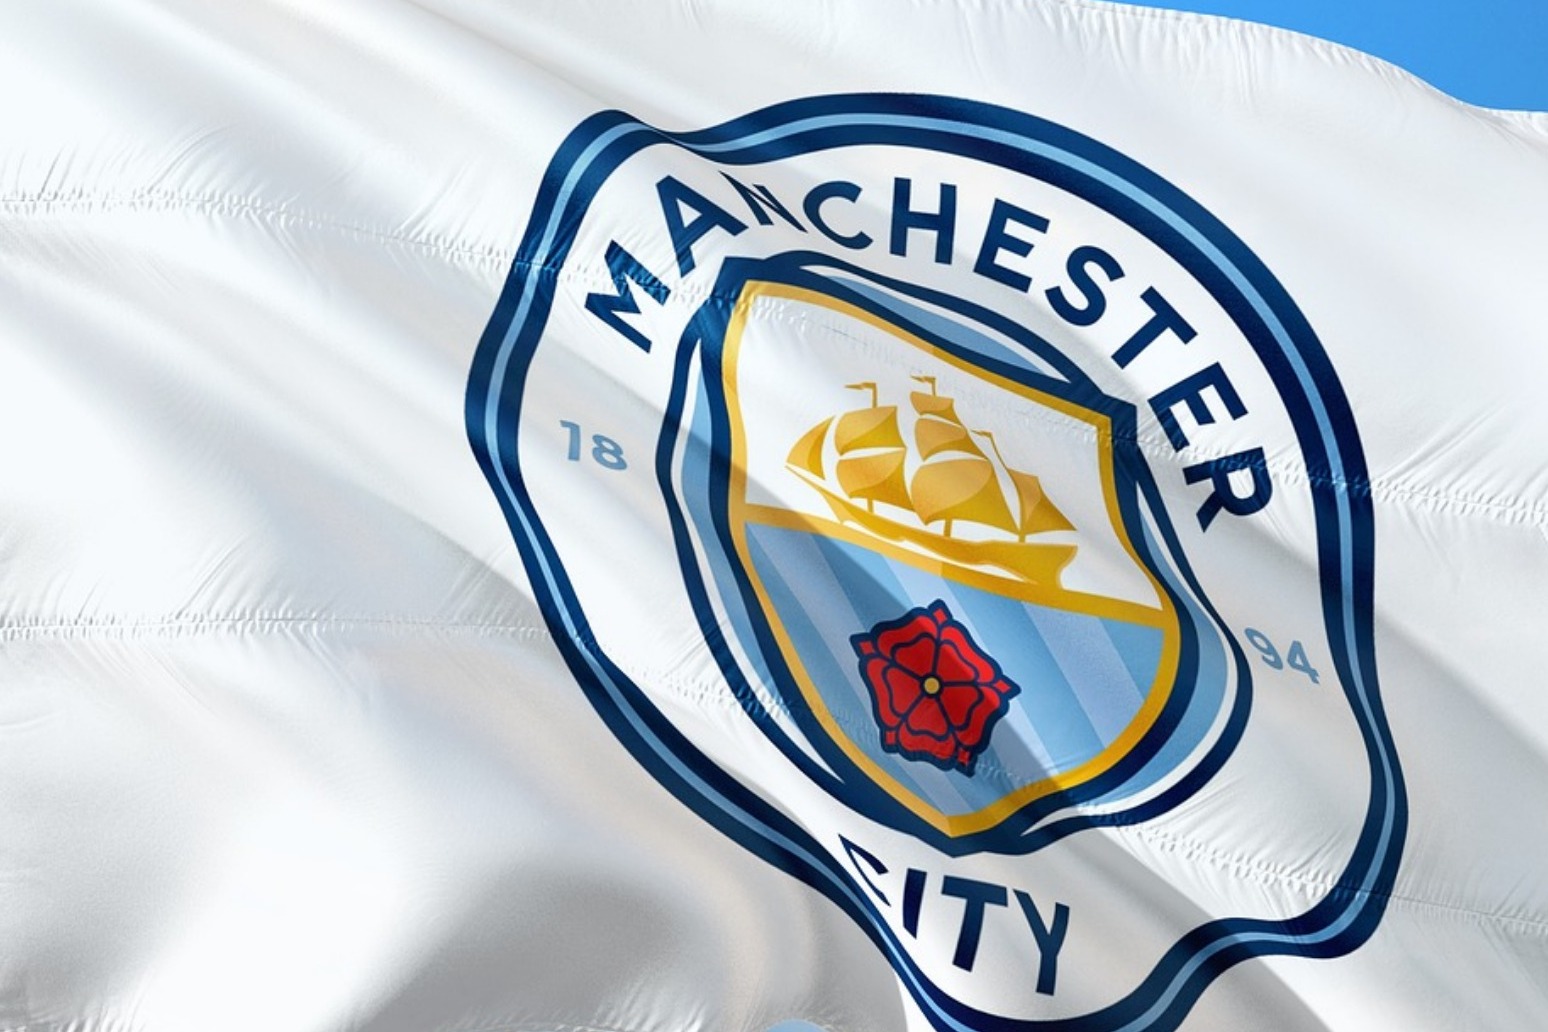 Manchester City retain the Premier League title 